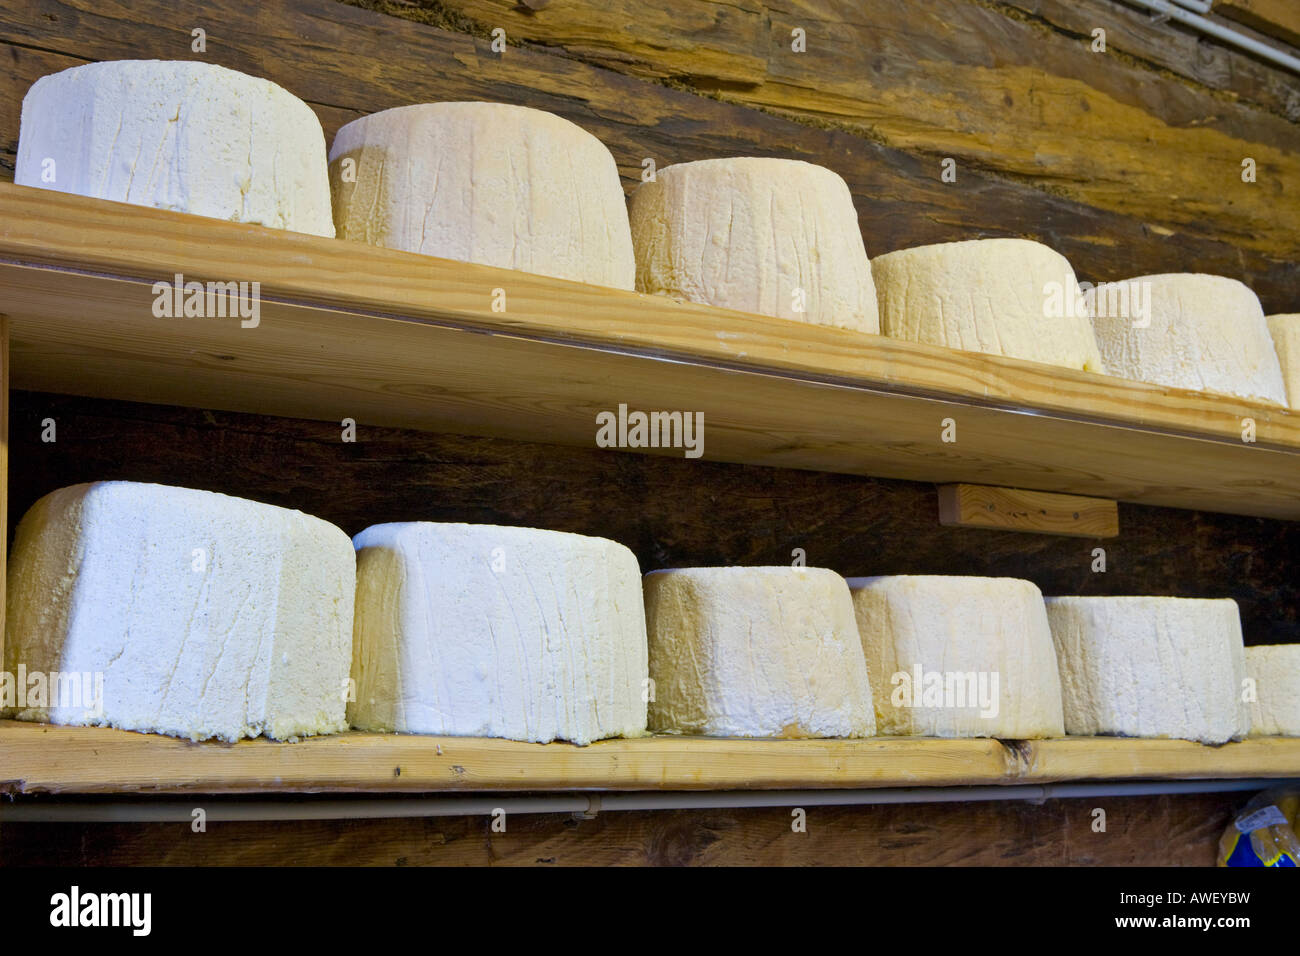 Cheese storage, Draugsteinalm (Draugstein mountain pasture), Grossarltal (Grossarl Valley), Salzburg, Austria, Europe Stock Photo